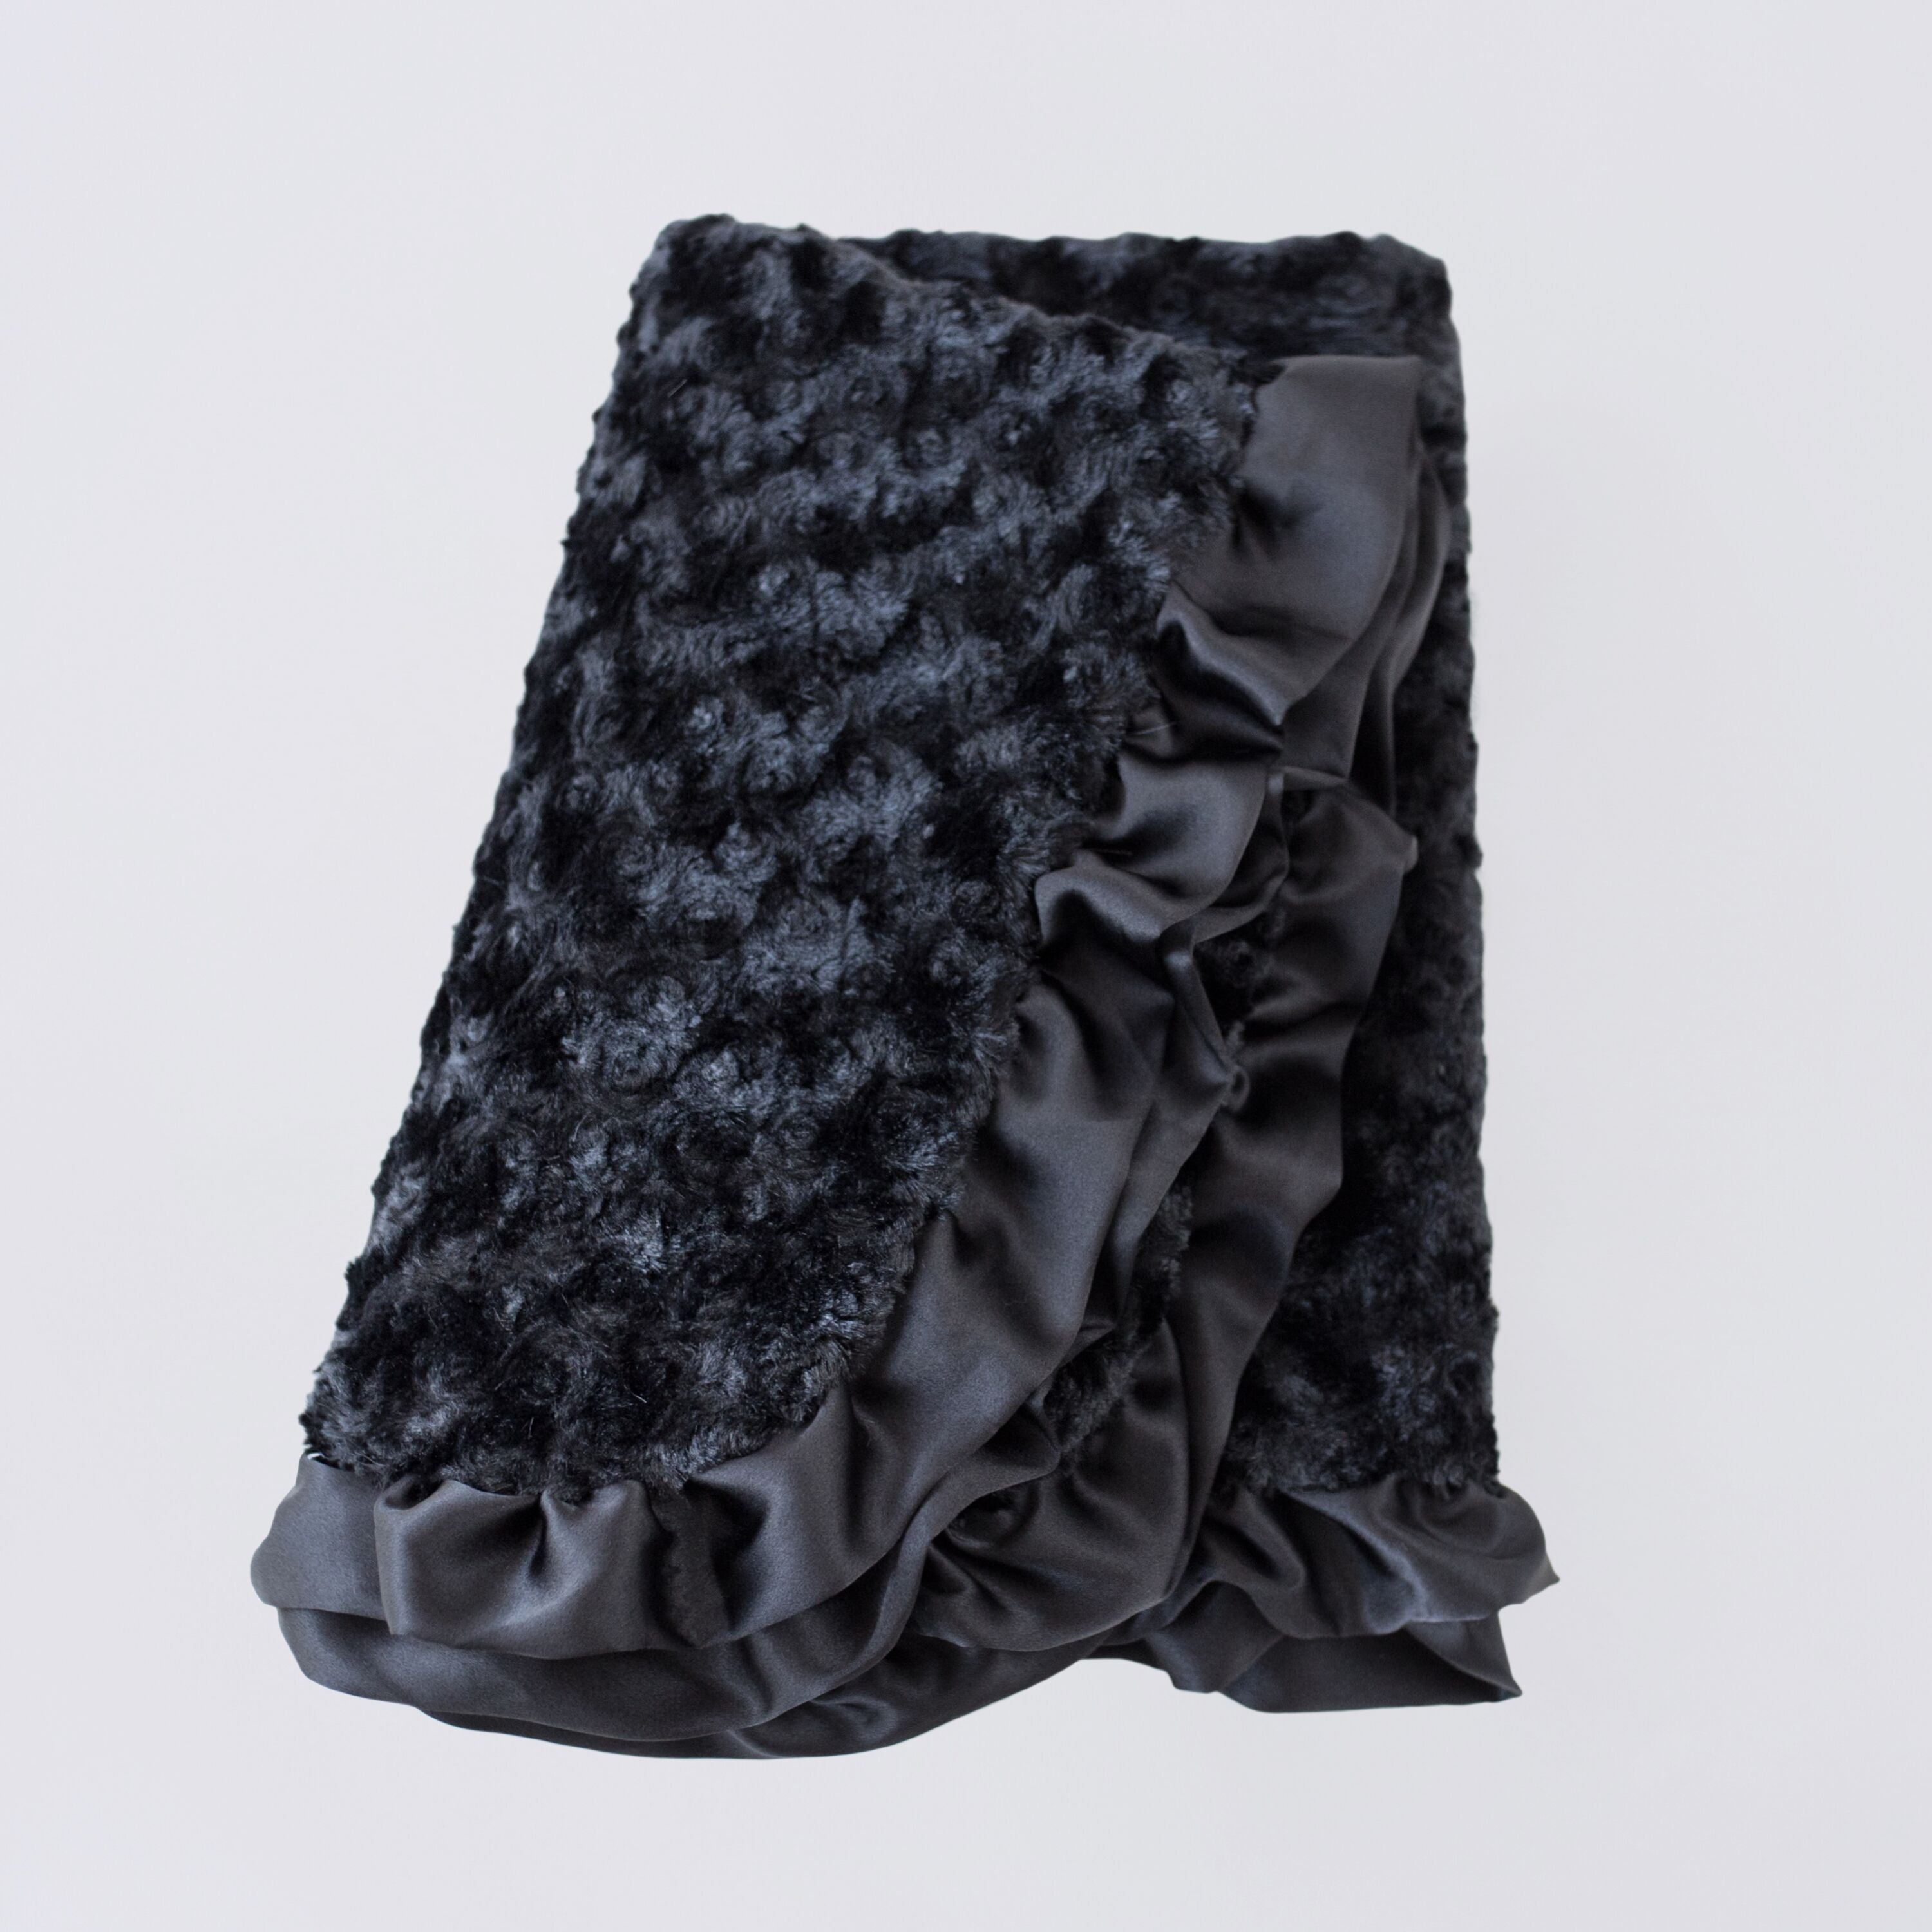 Ruffle Dog Blanket: Black